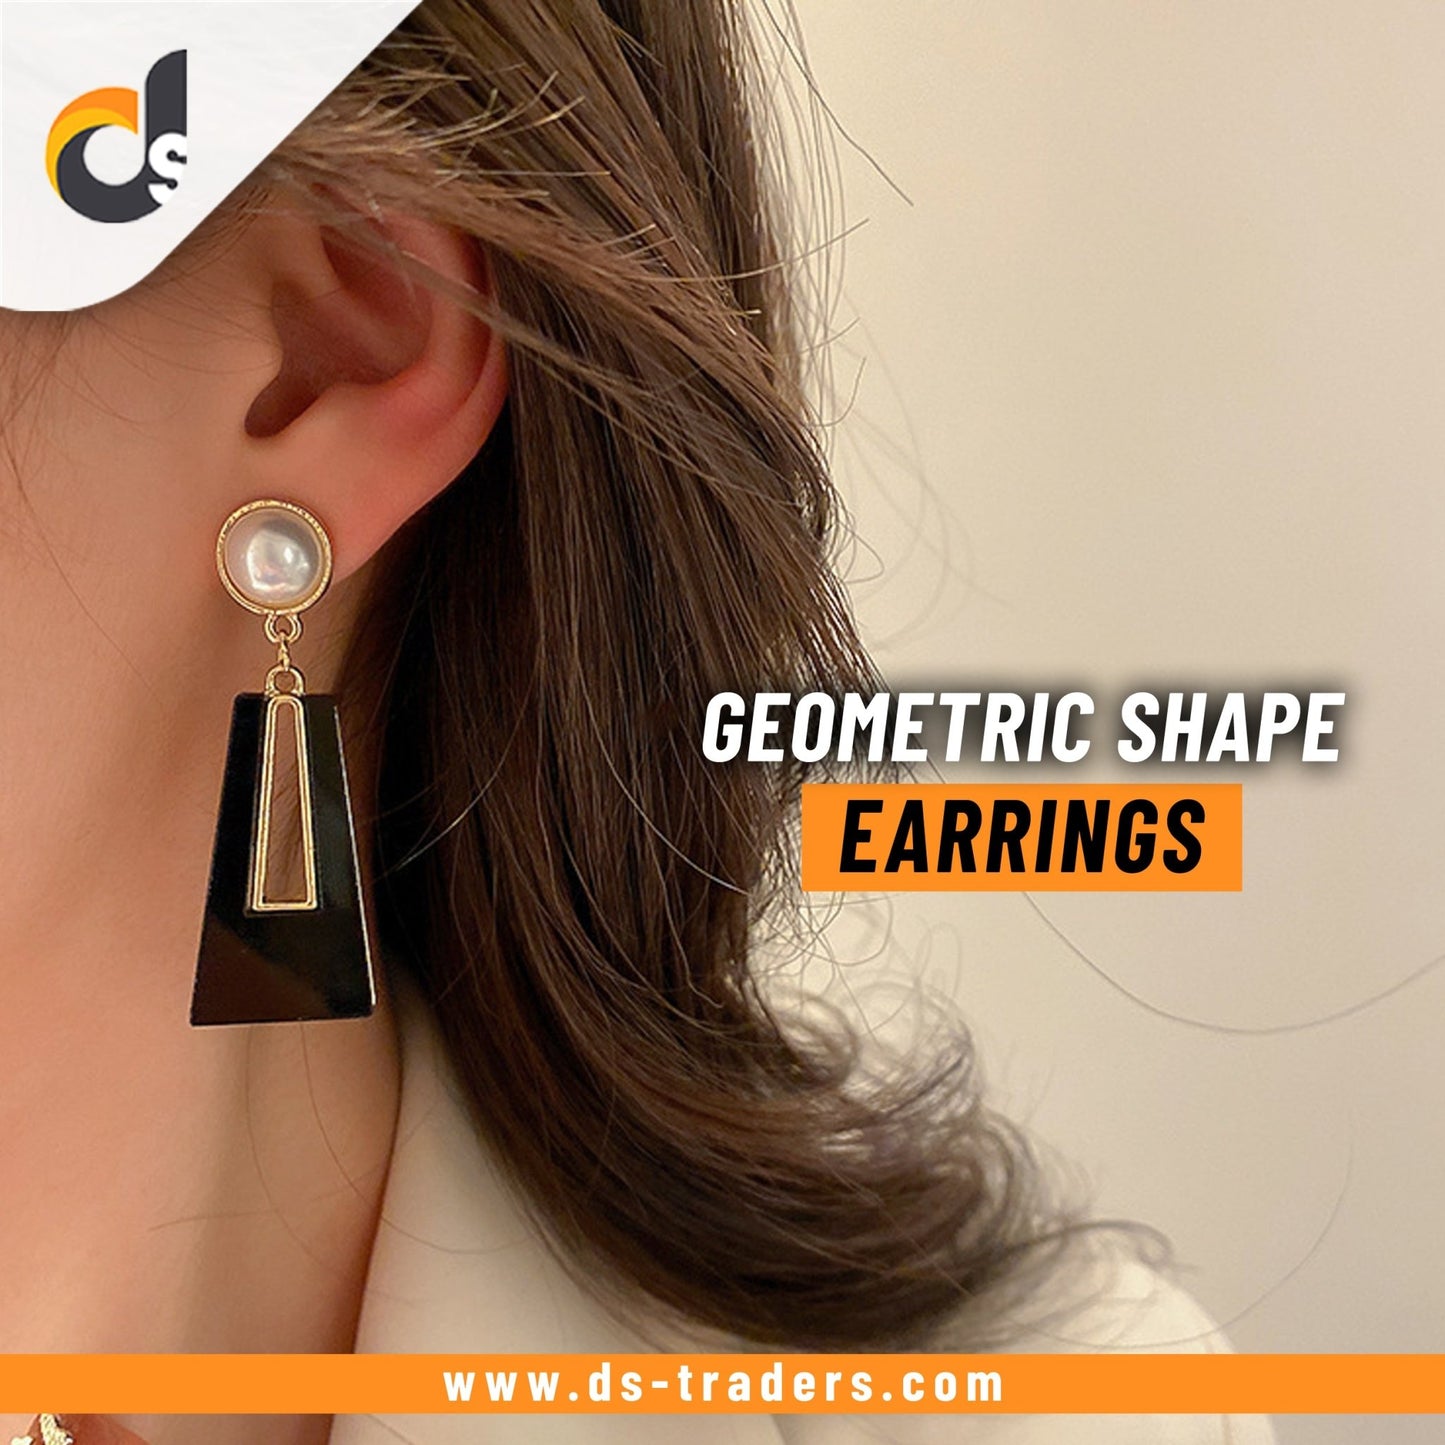 Geometric Shape Earrings - DS Traders